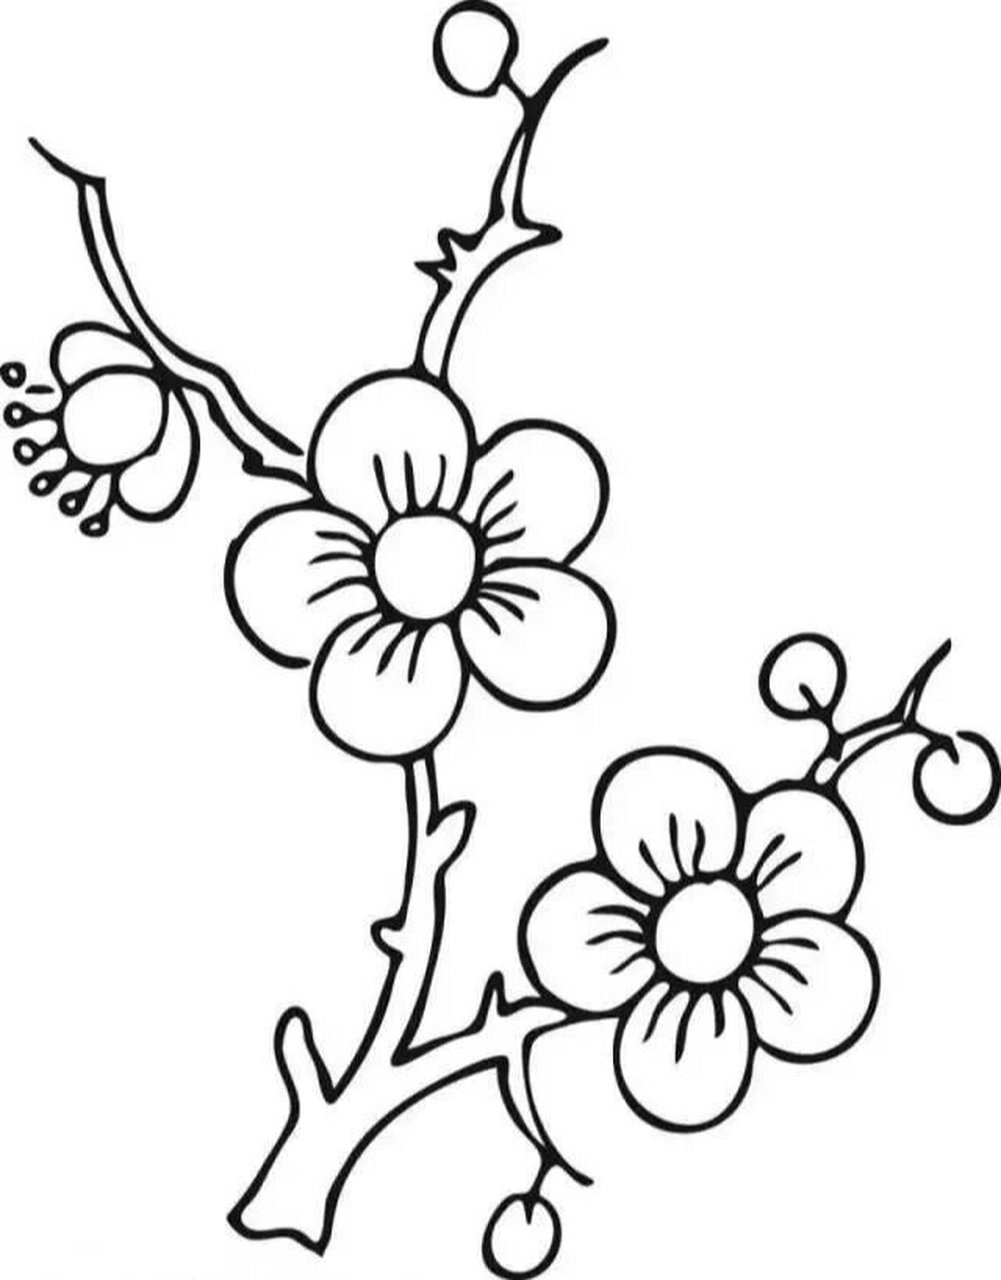 梅树枝画法图片